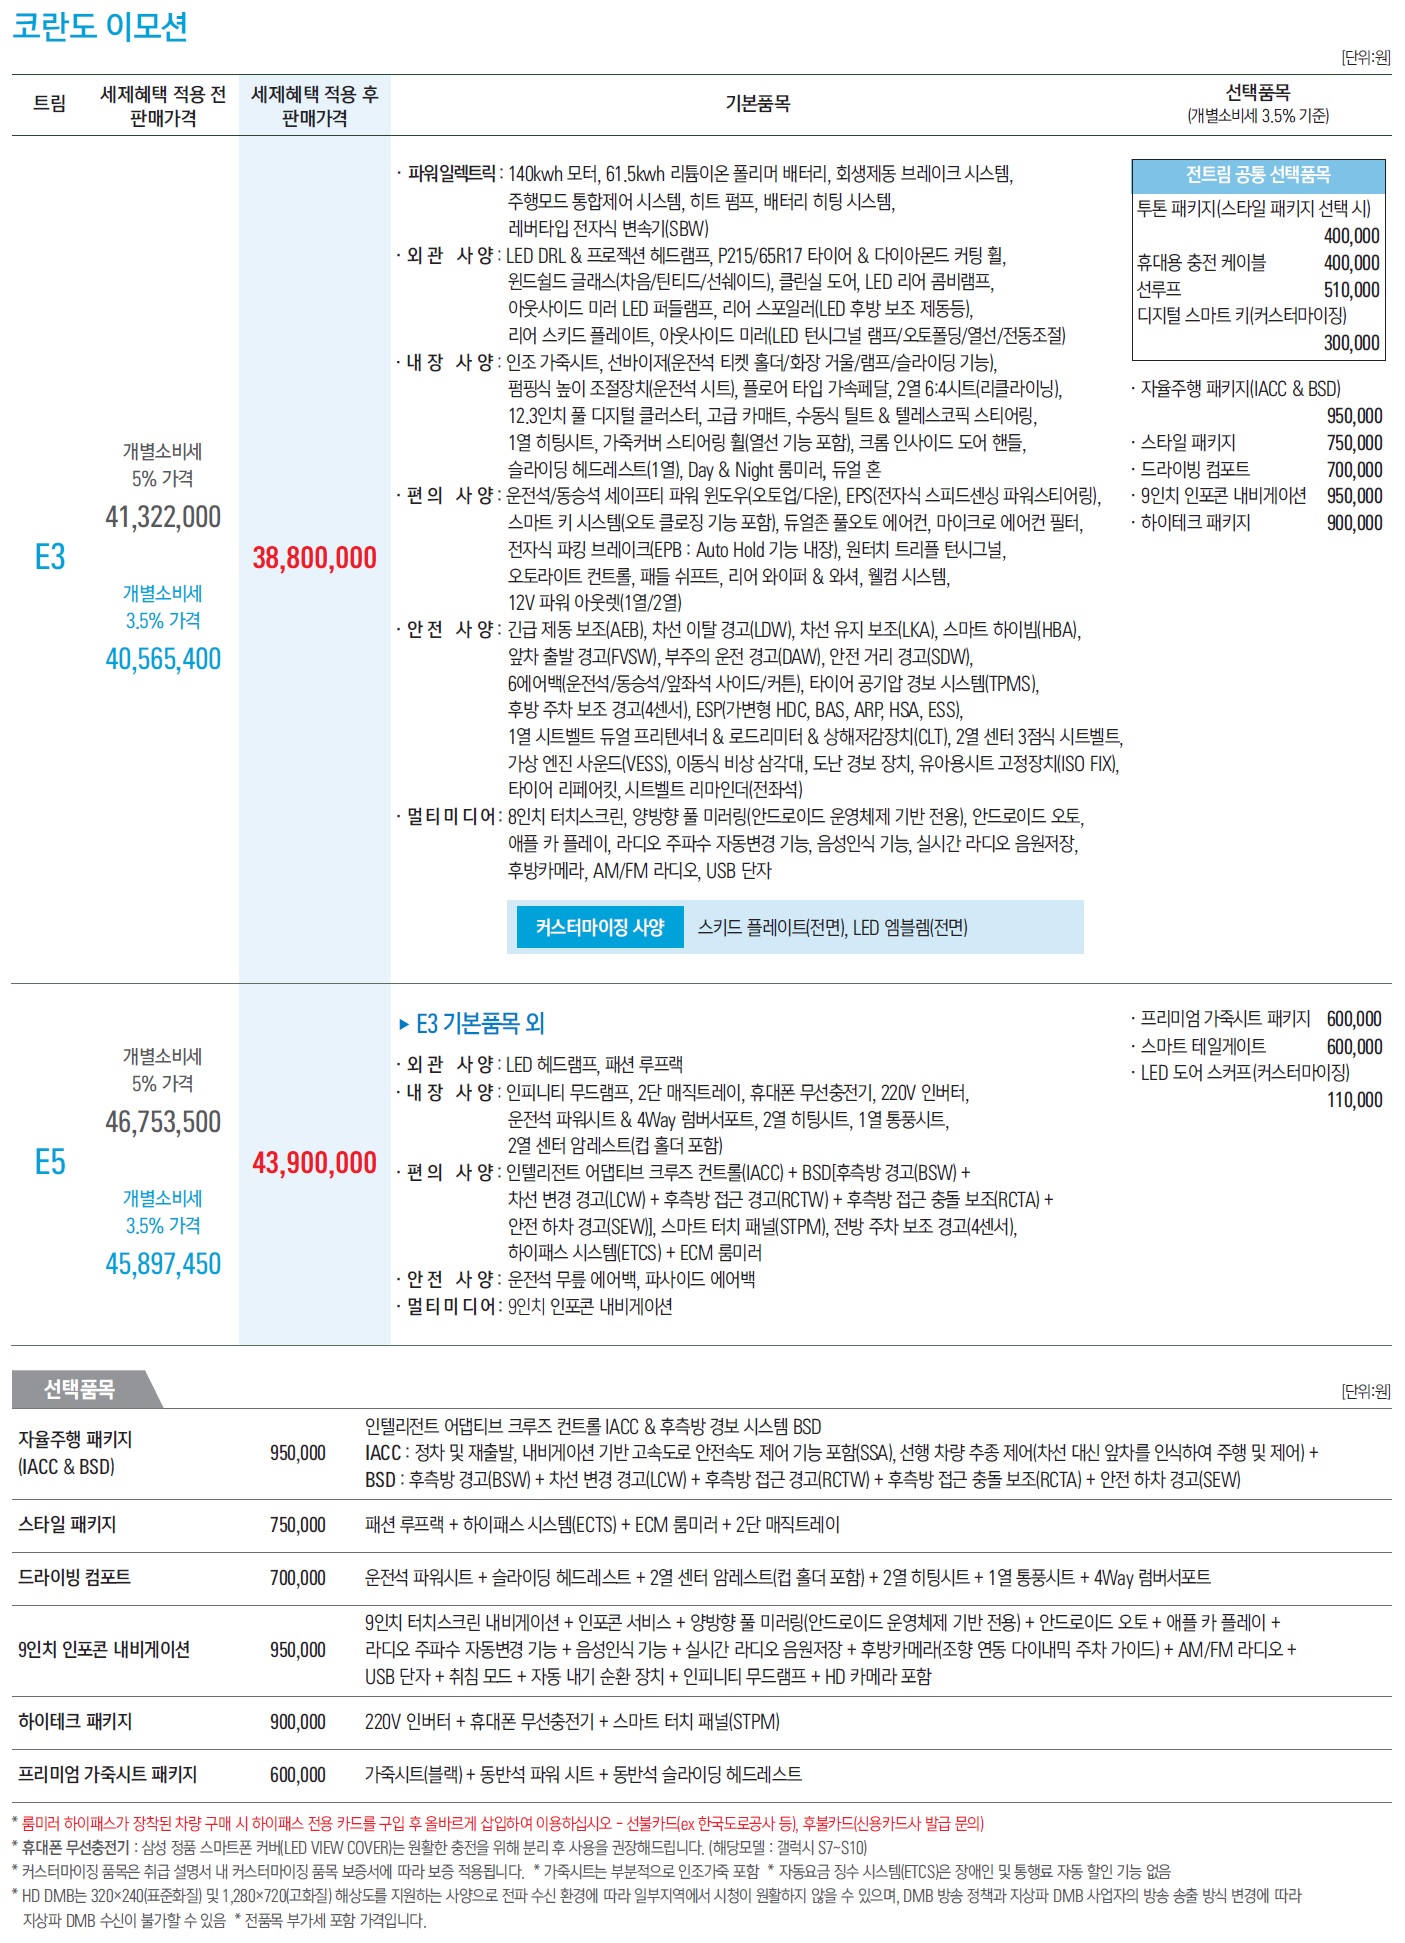 코란도 이모션 가격표 - 2022년 01월(사전계약) -4.jpg